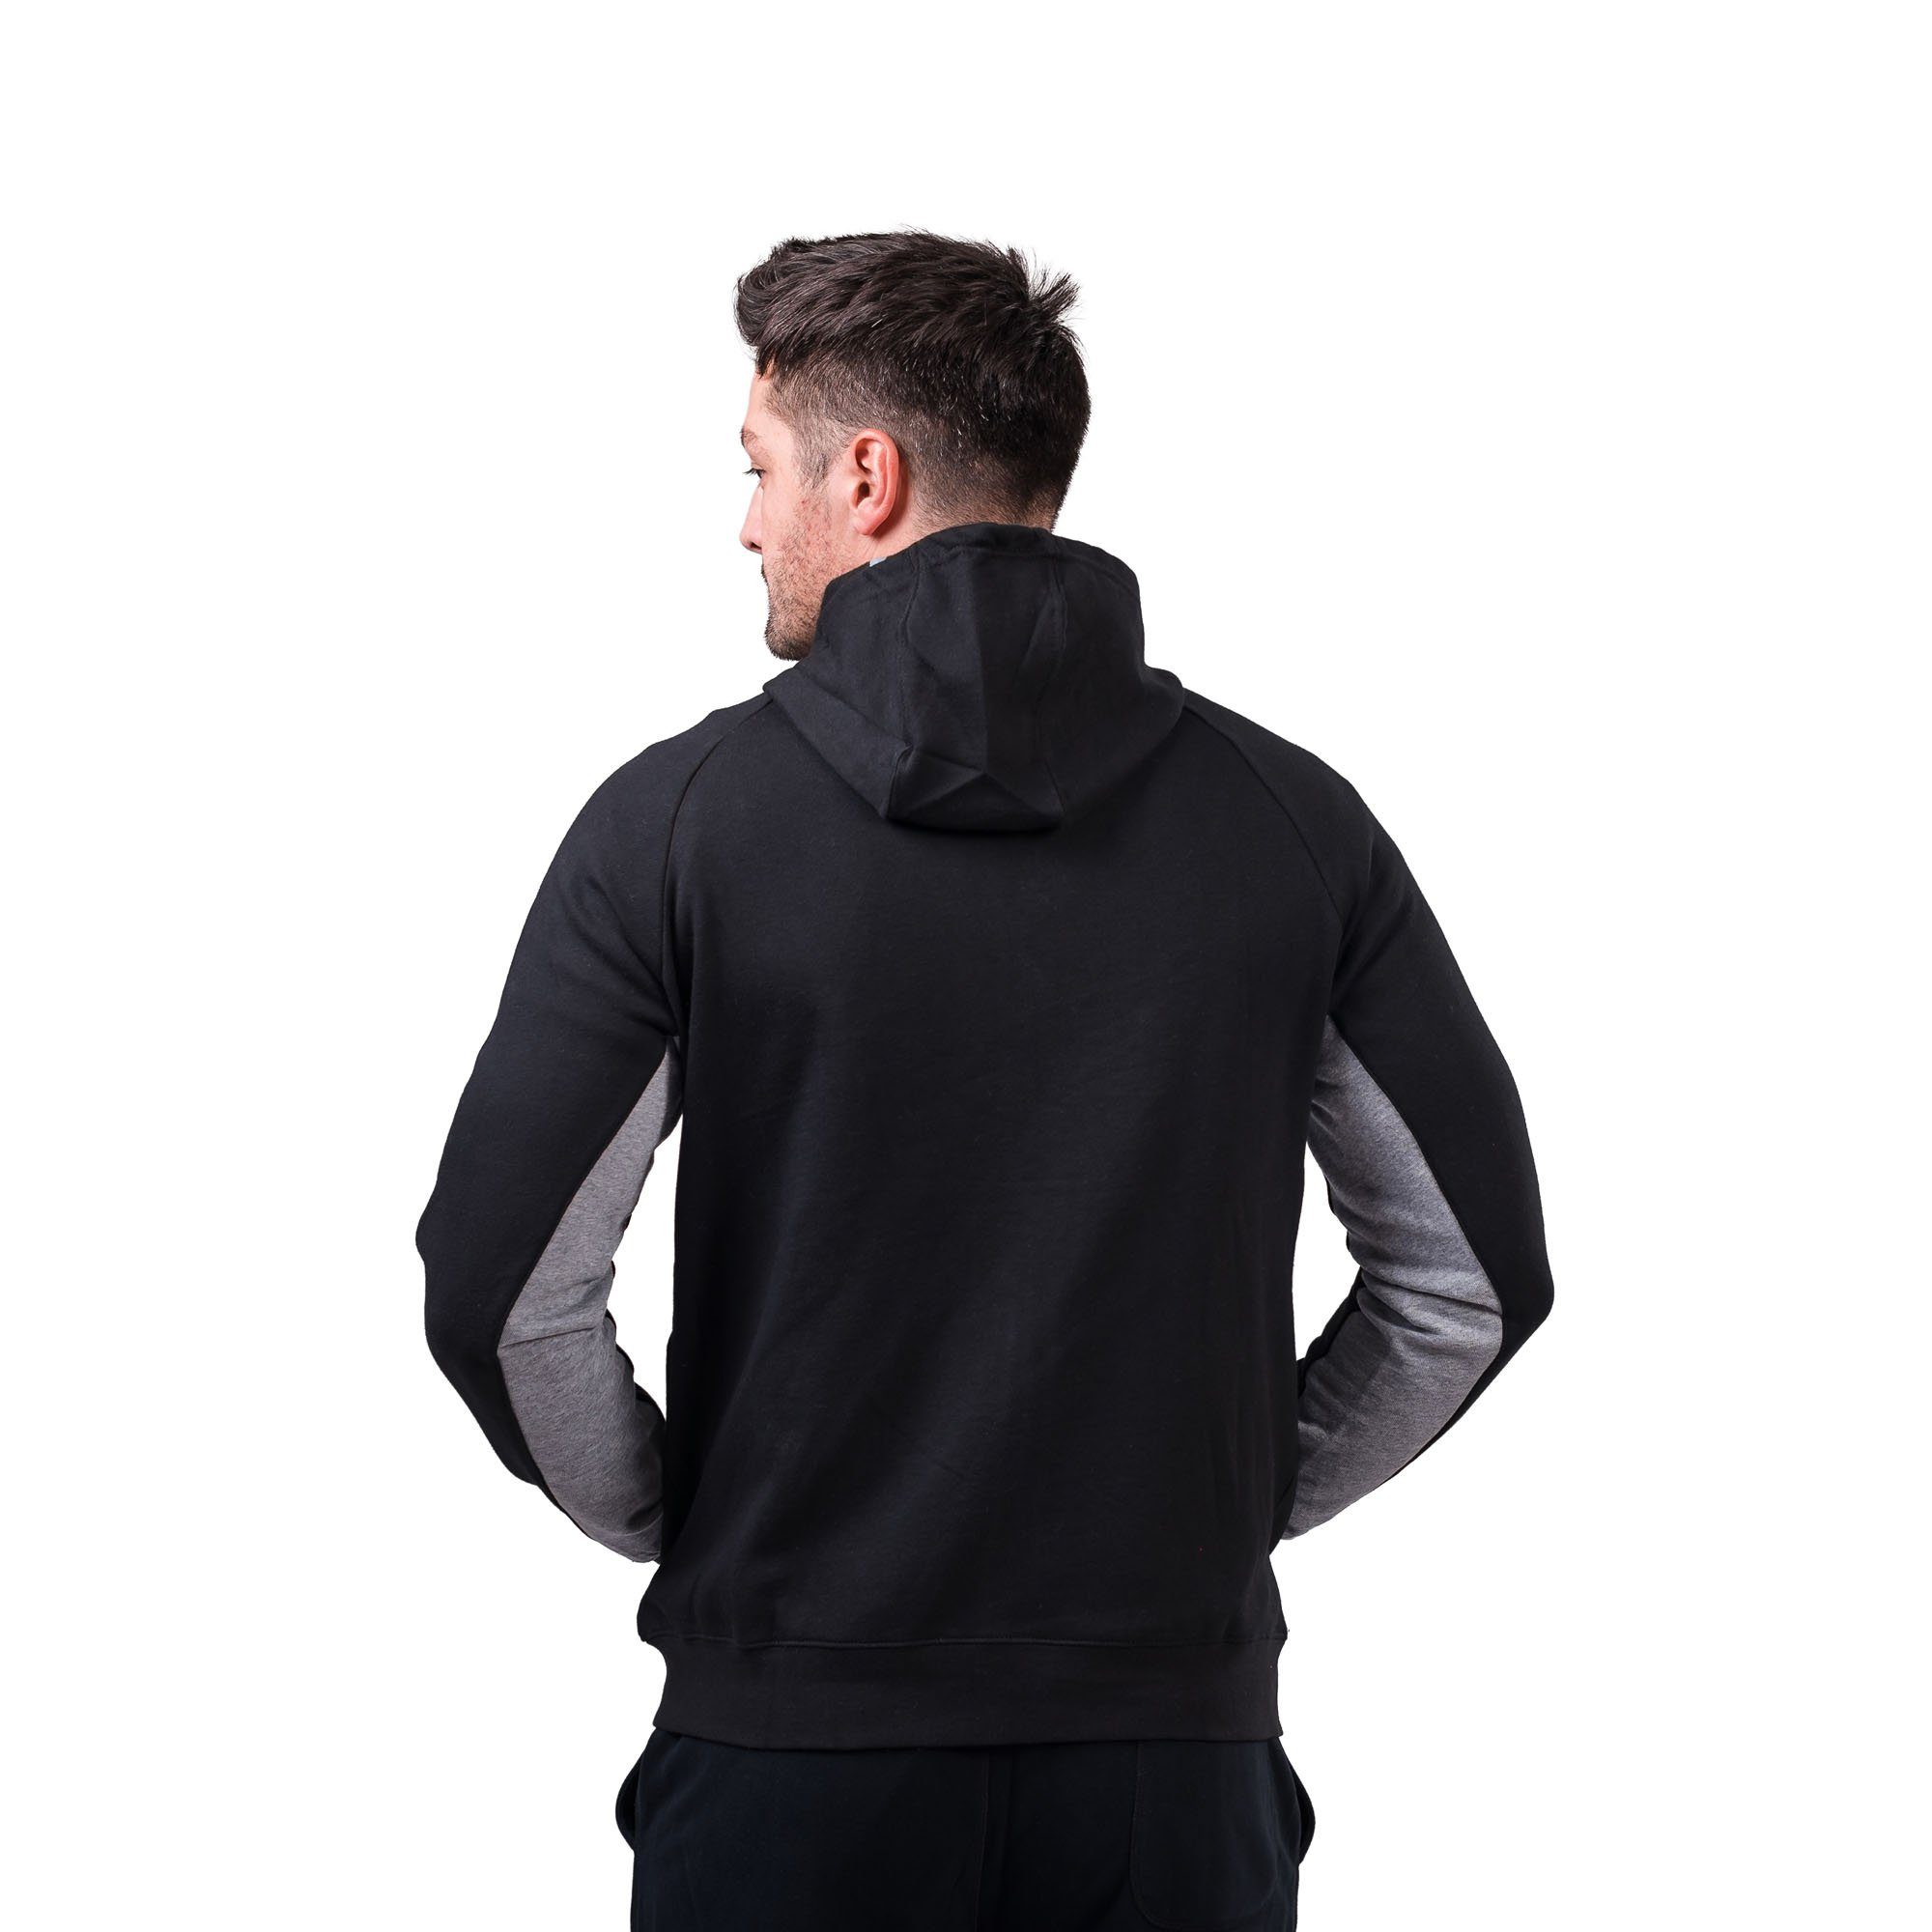 PEAK Sweatjacke Zip im schwarz Hoody sportlichen Look